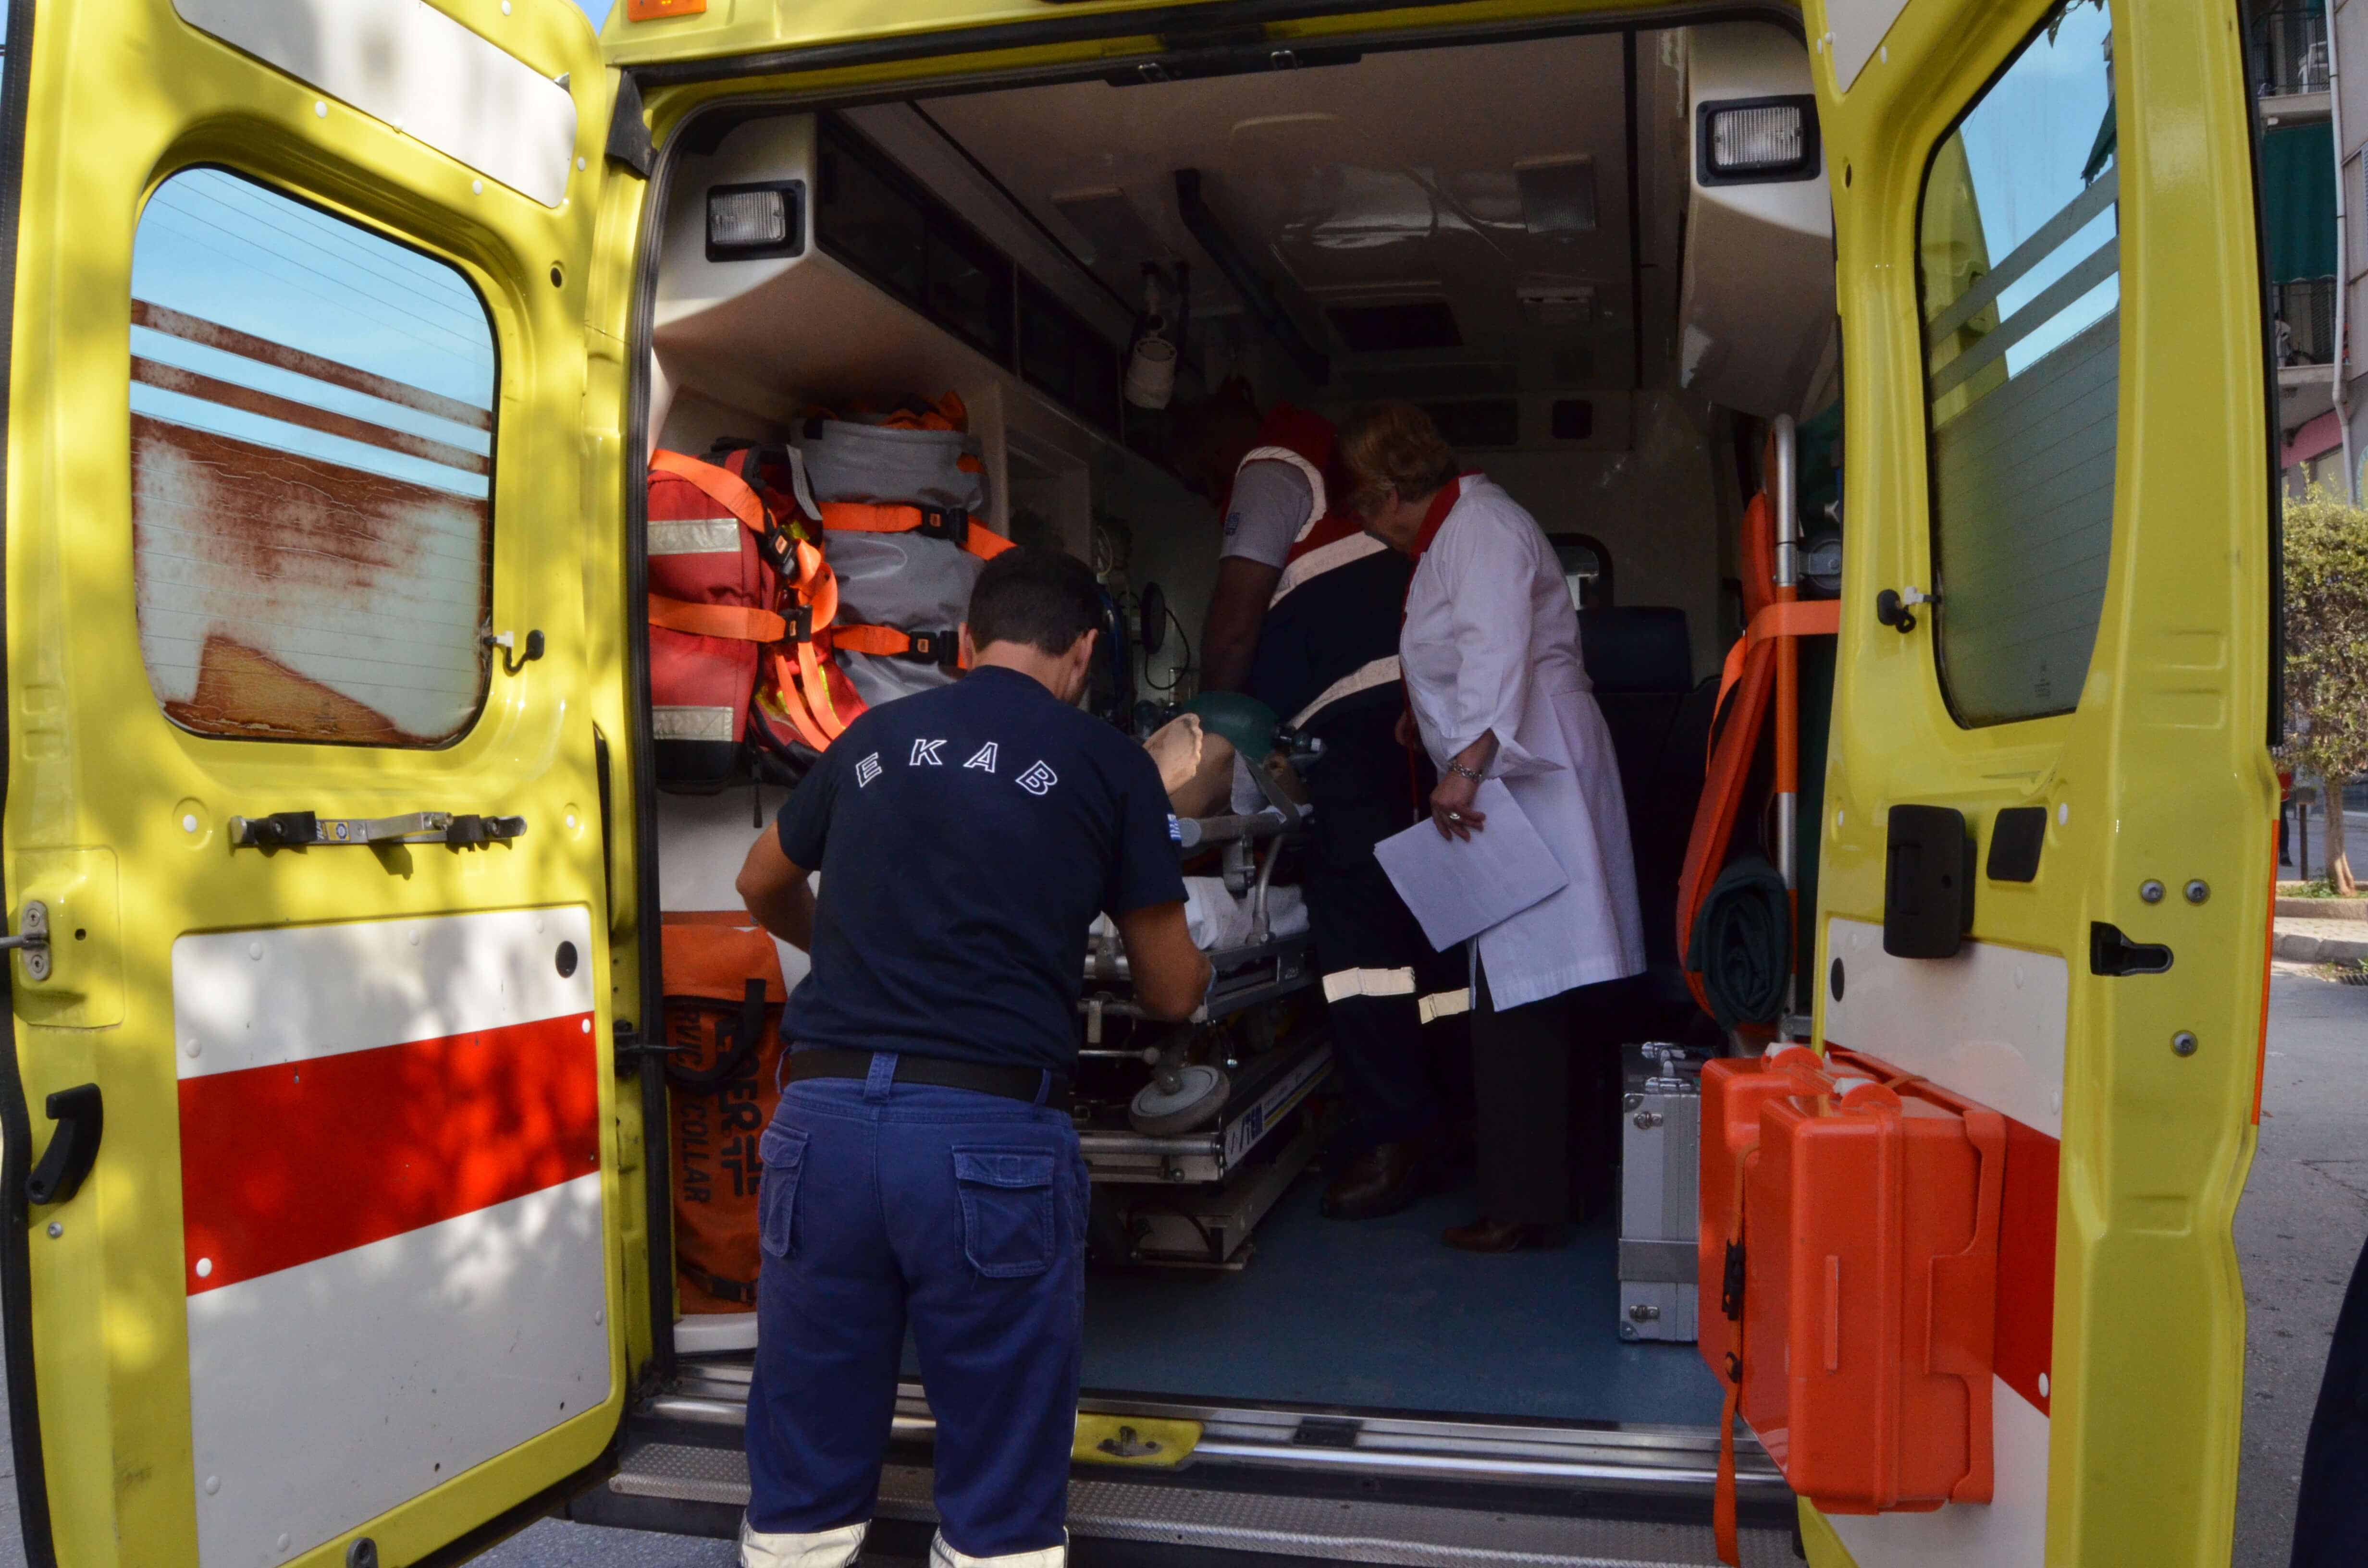 Ηλεία: Σοβαρός τραυματισμός μετά από έκρηξη – Αγωνία για τη ζωή 42χρονου άντρα!